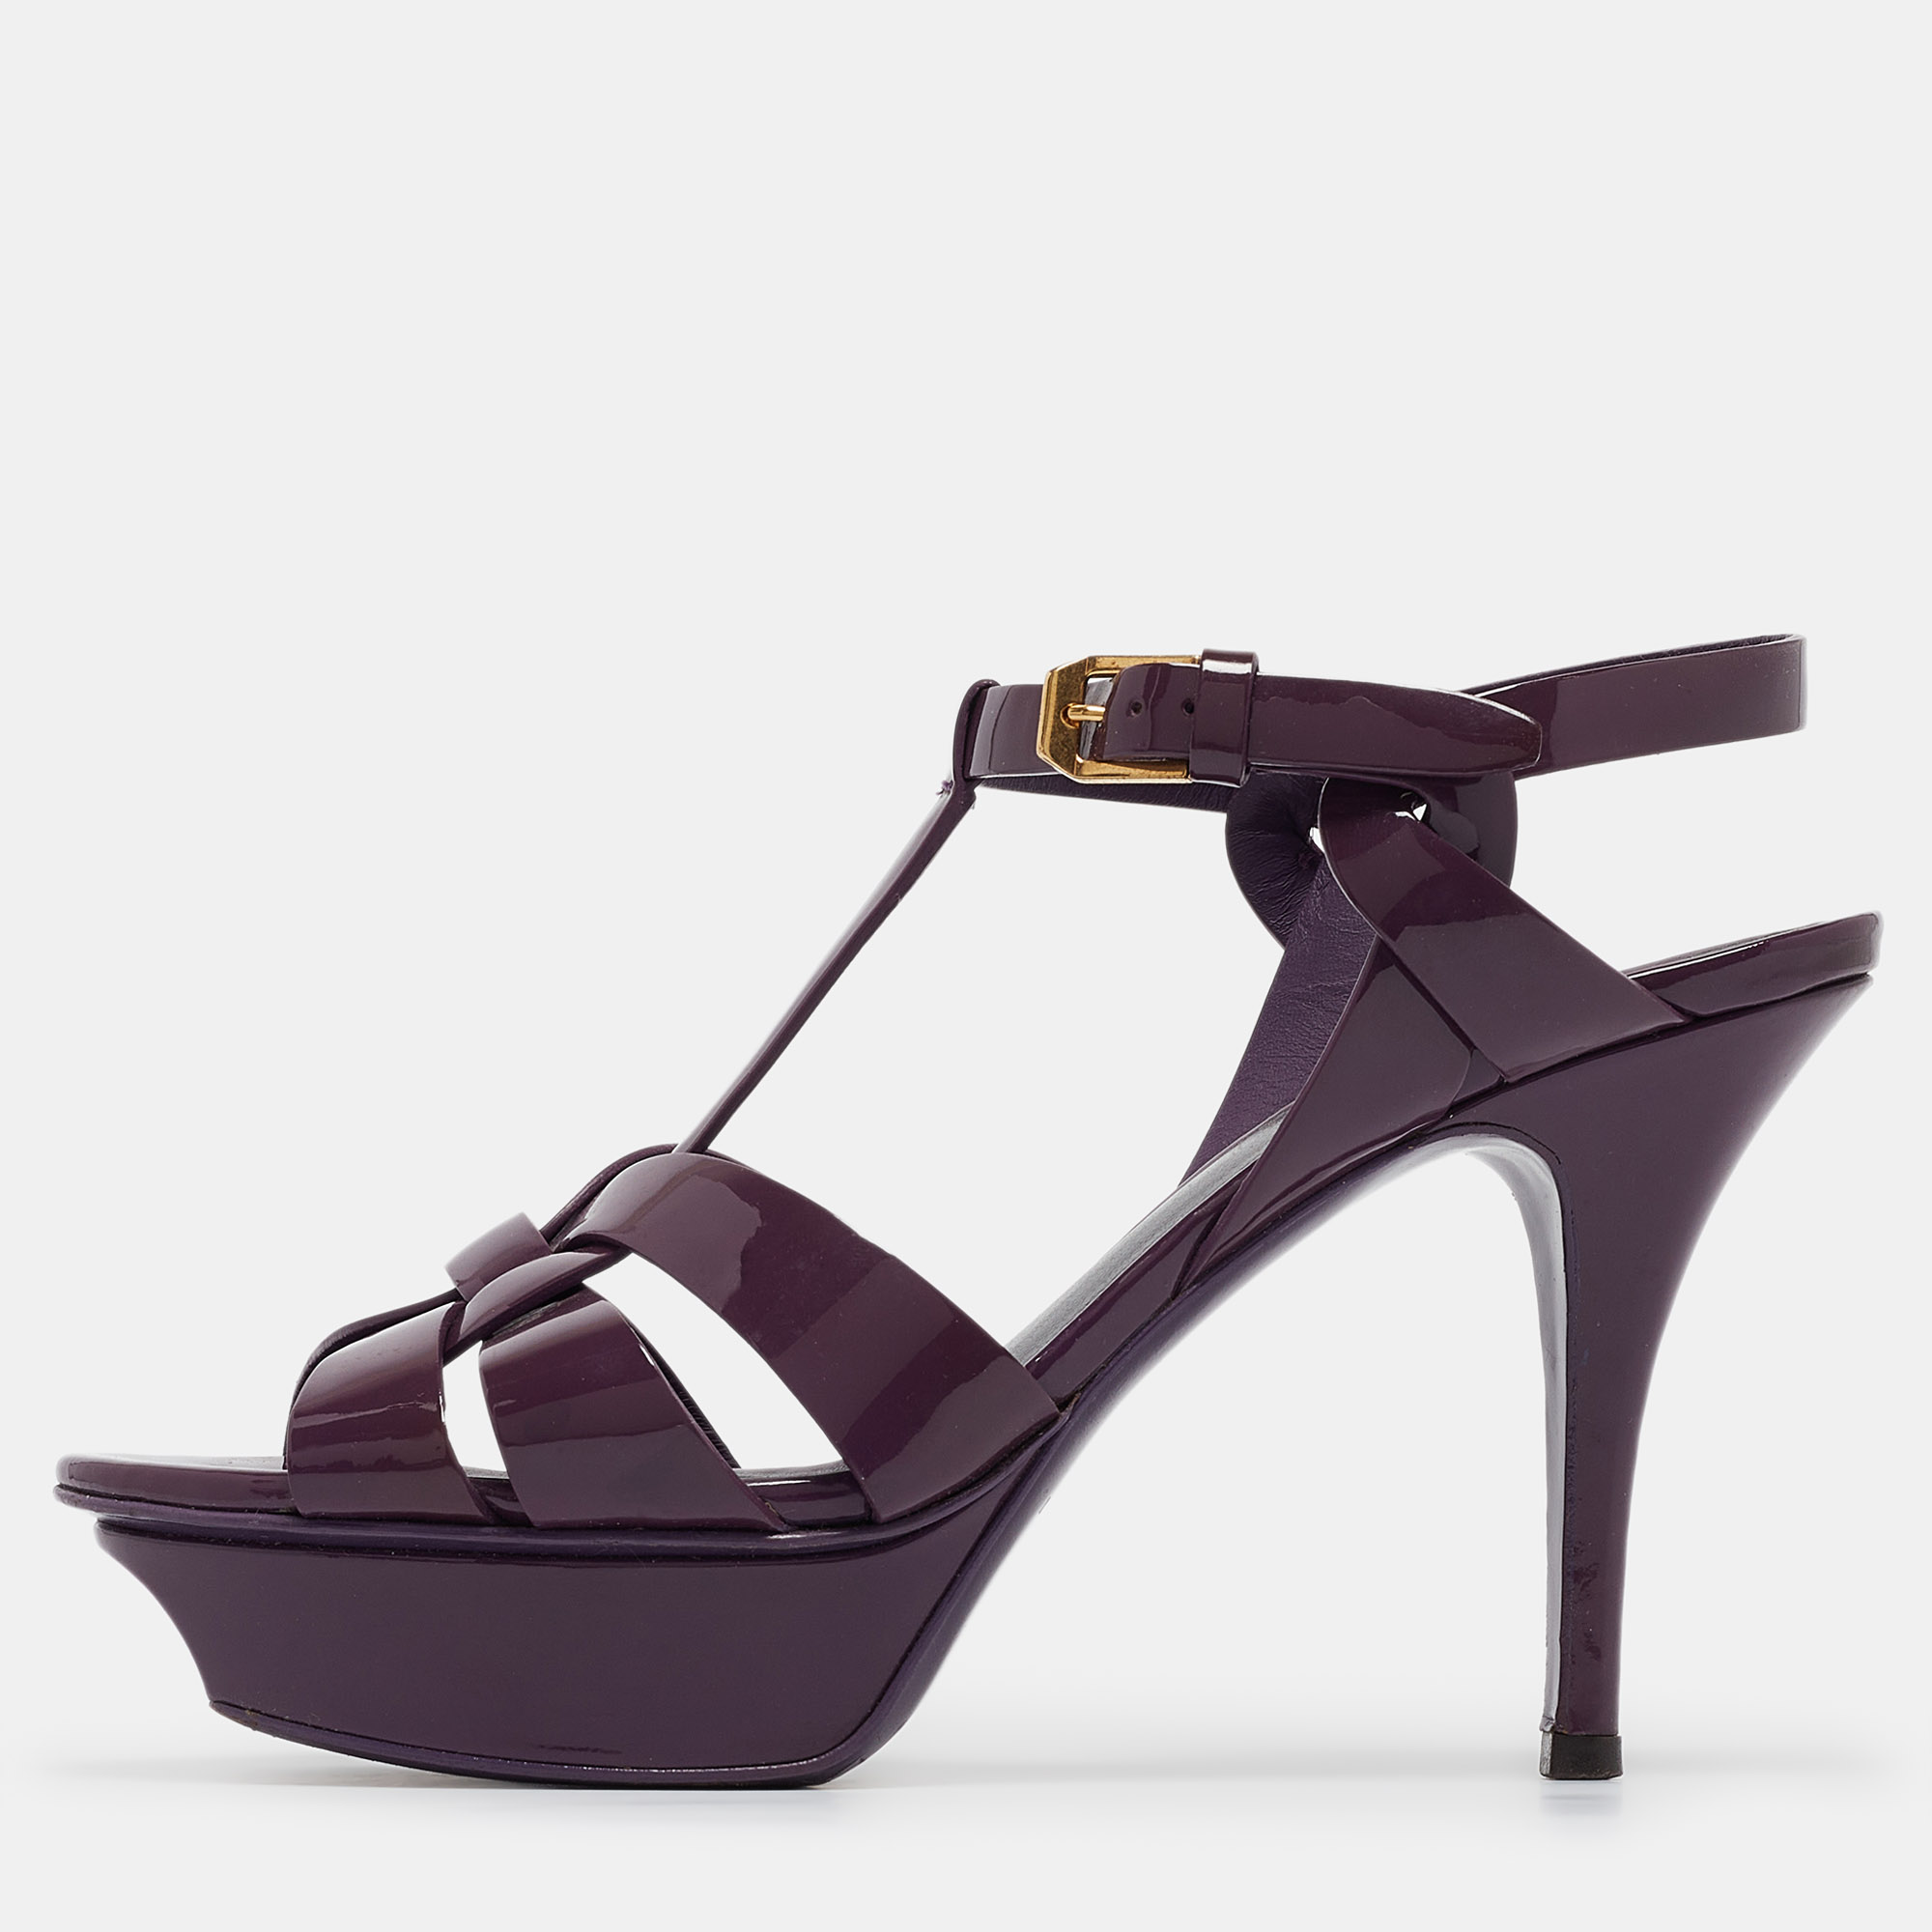 Saint laurent paris saint laurent purple patent leather tribute sandals size 36.5